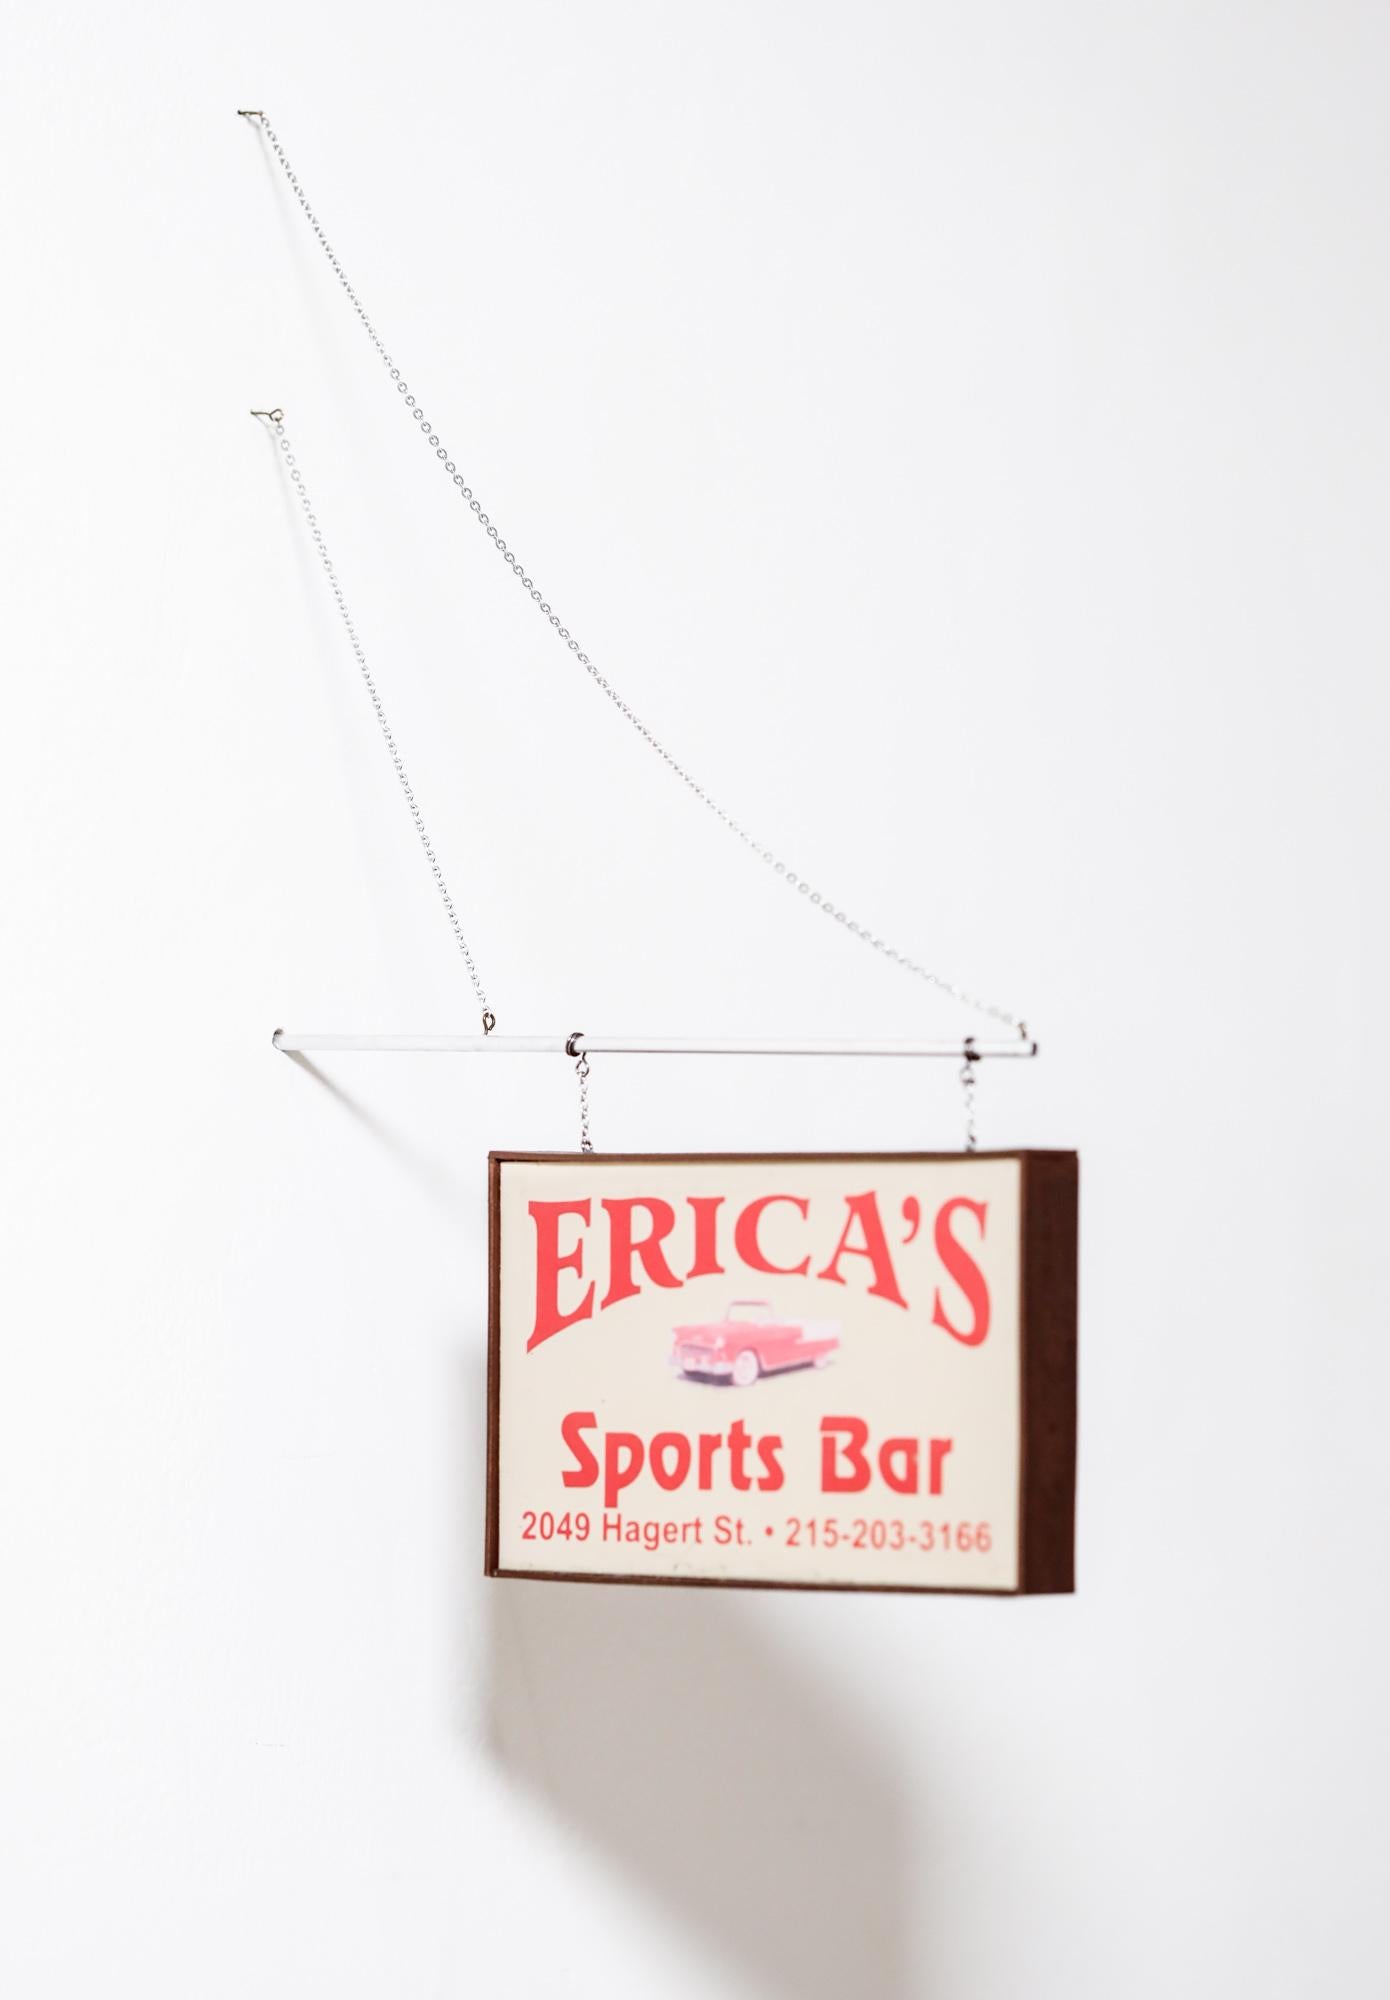 Erica's